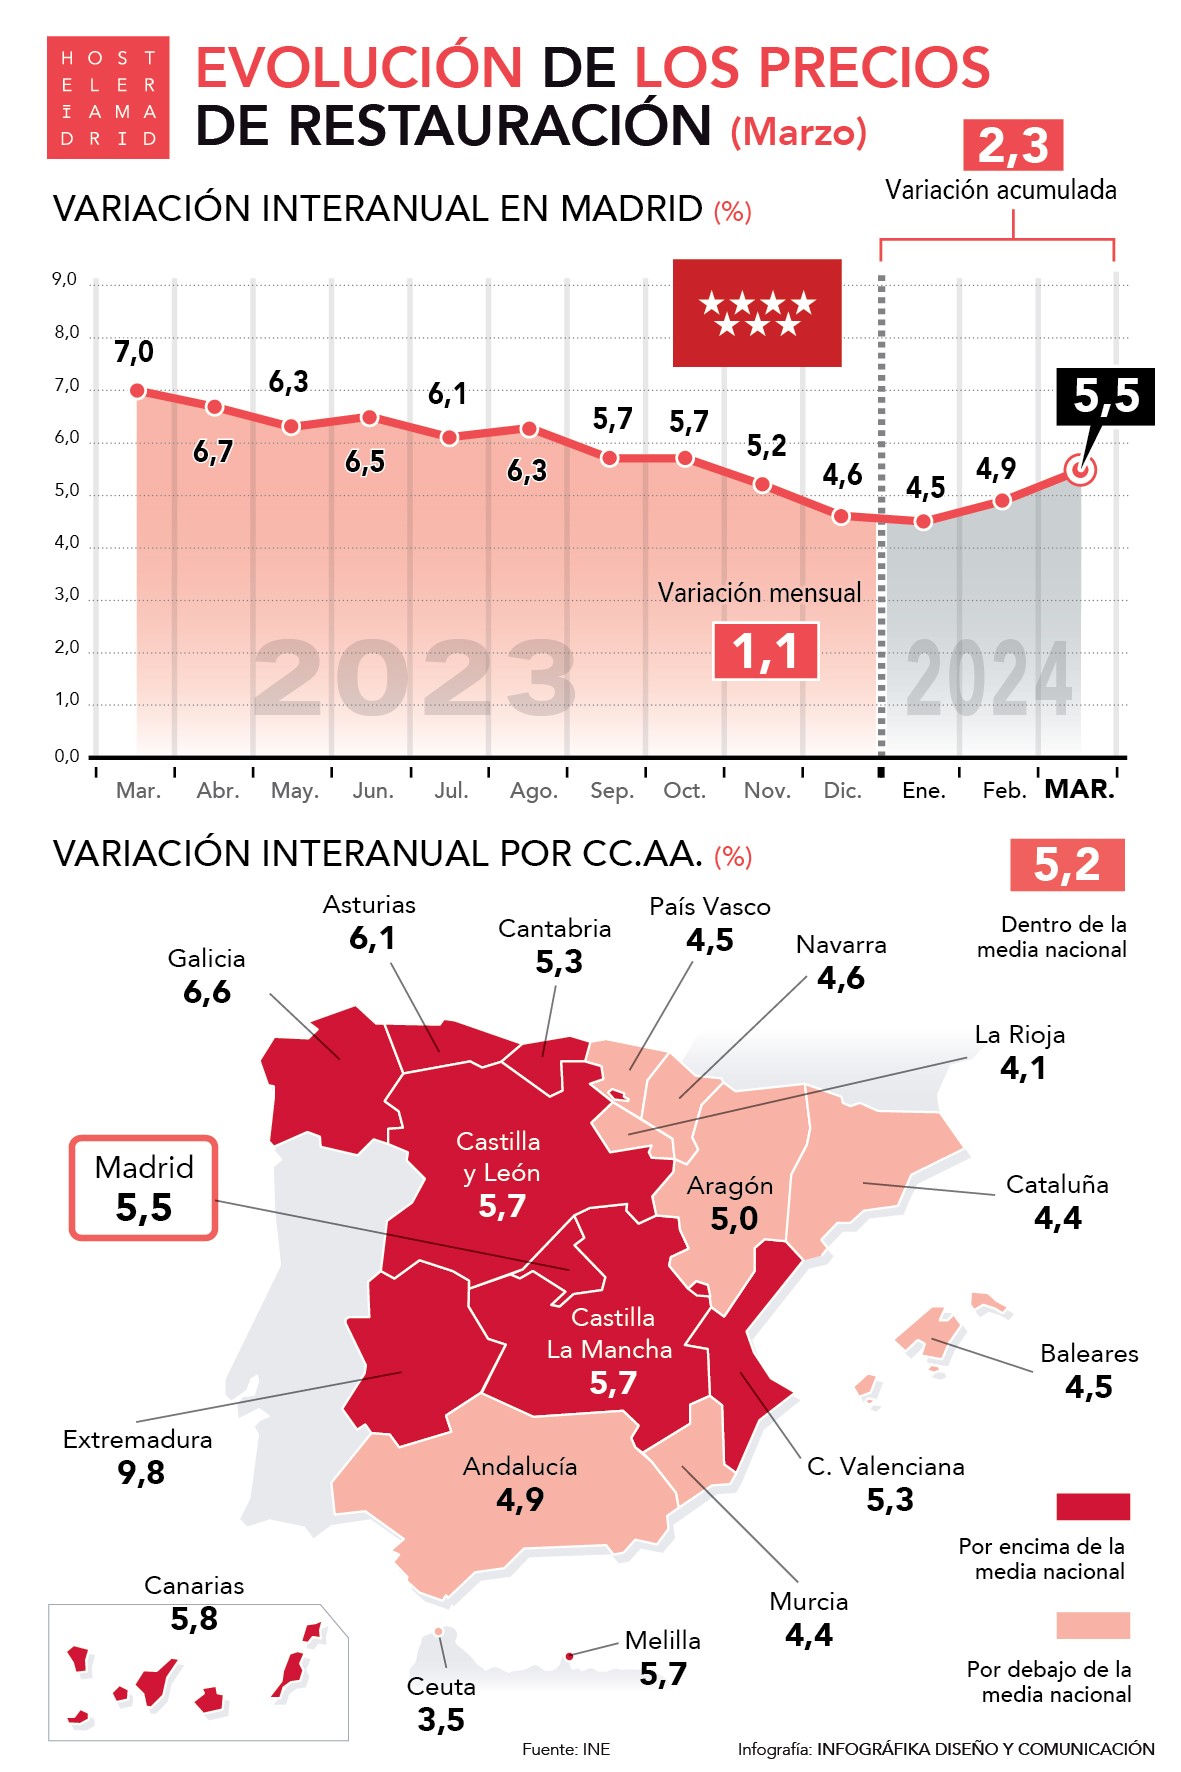 Los precios de restauración suben un 5,5% en Madrid en marzo - La Viña